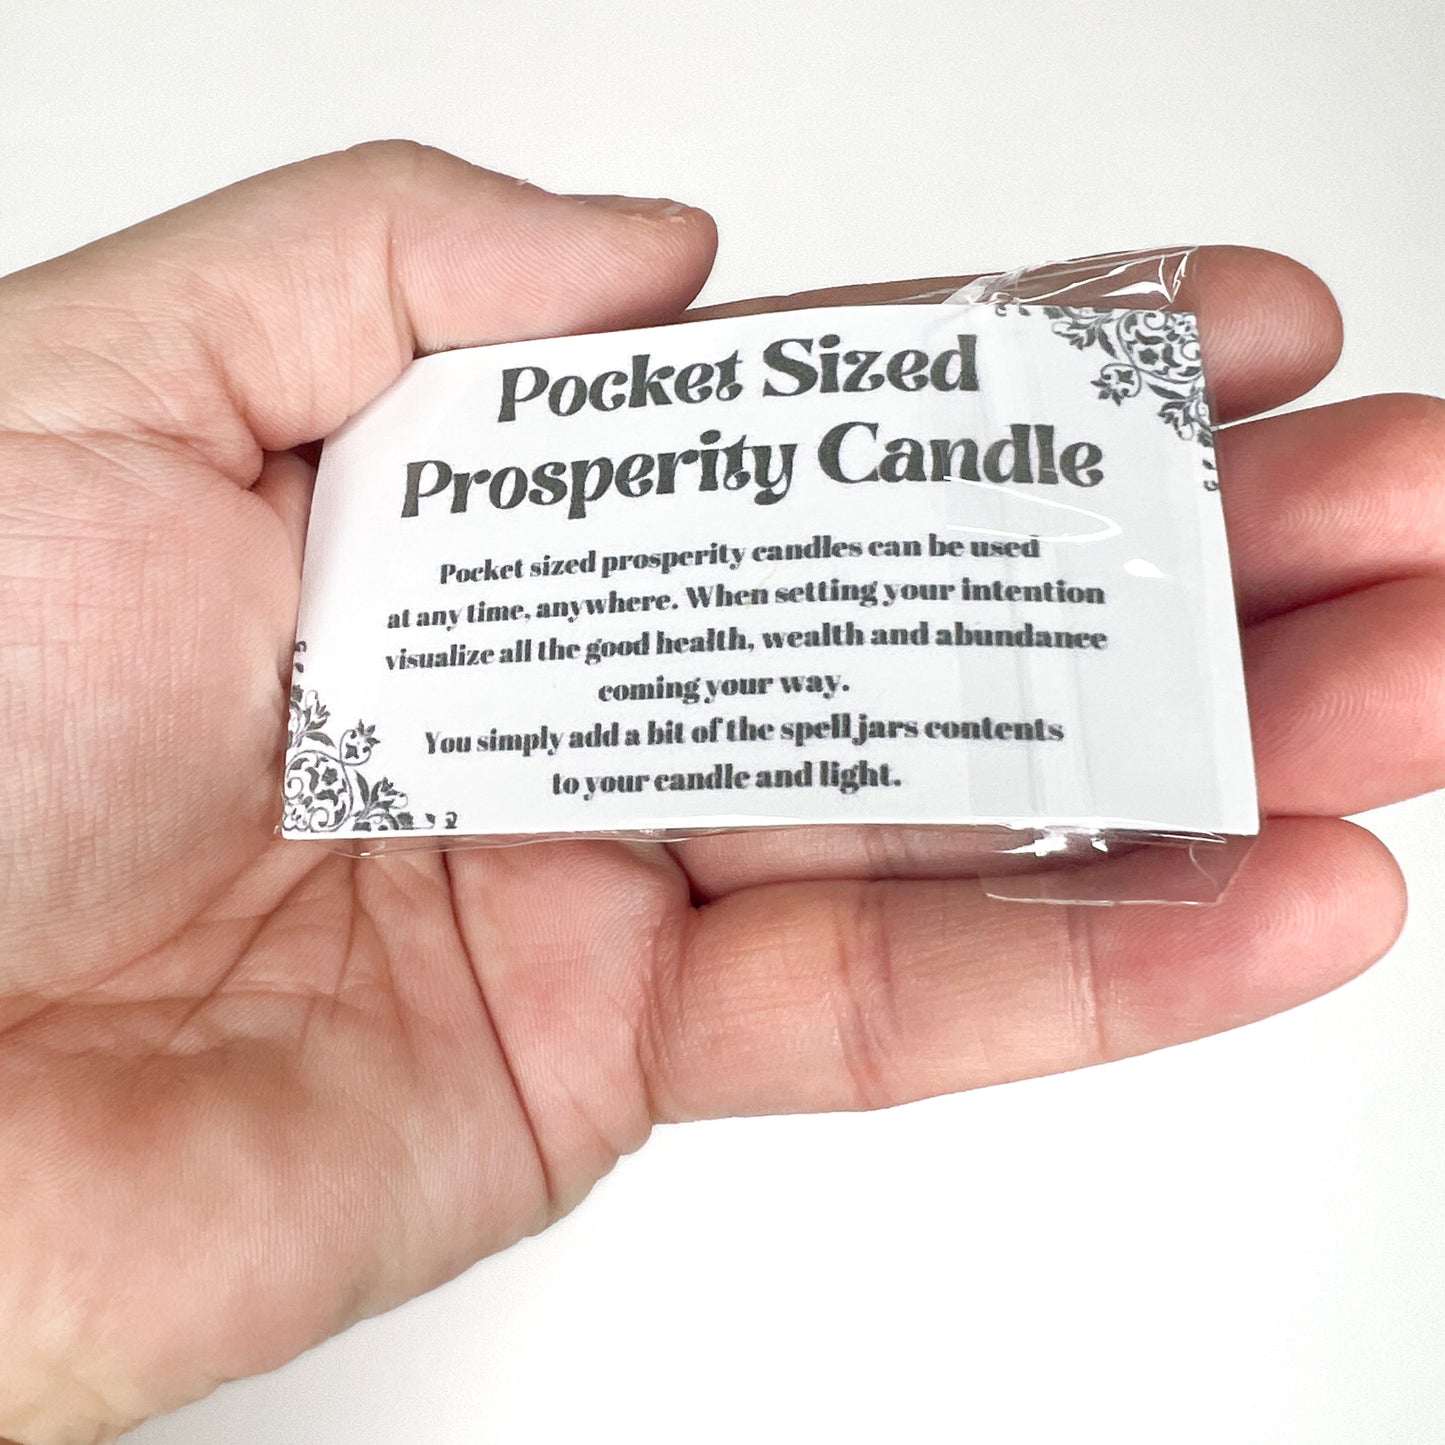 Pocket Sized Prosperity Candle